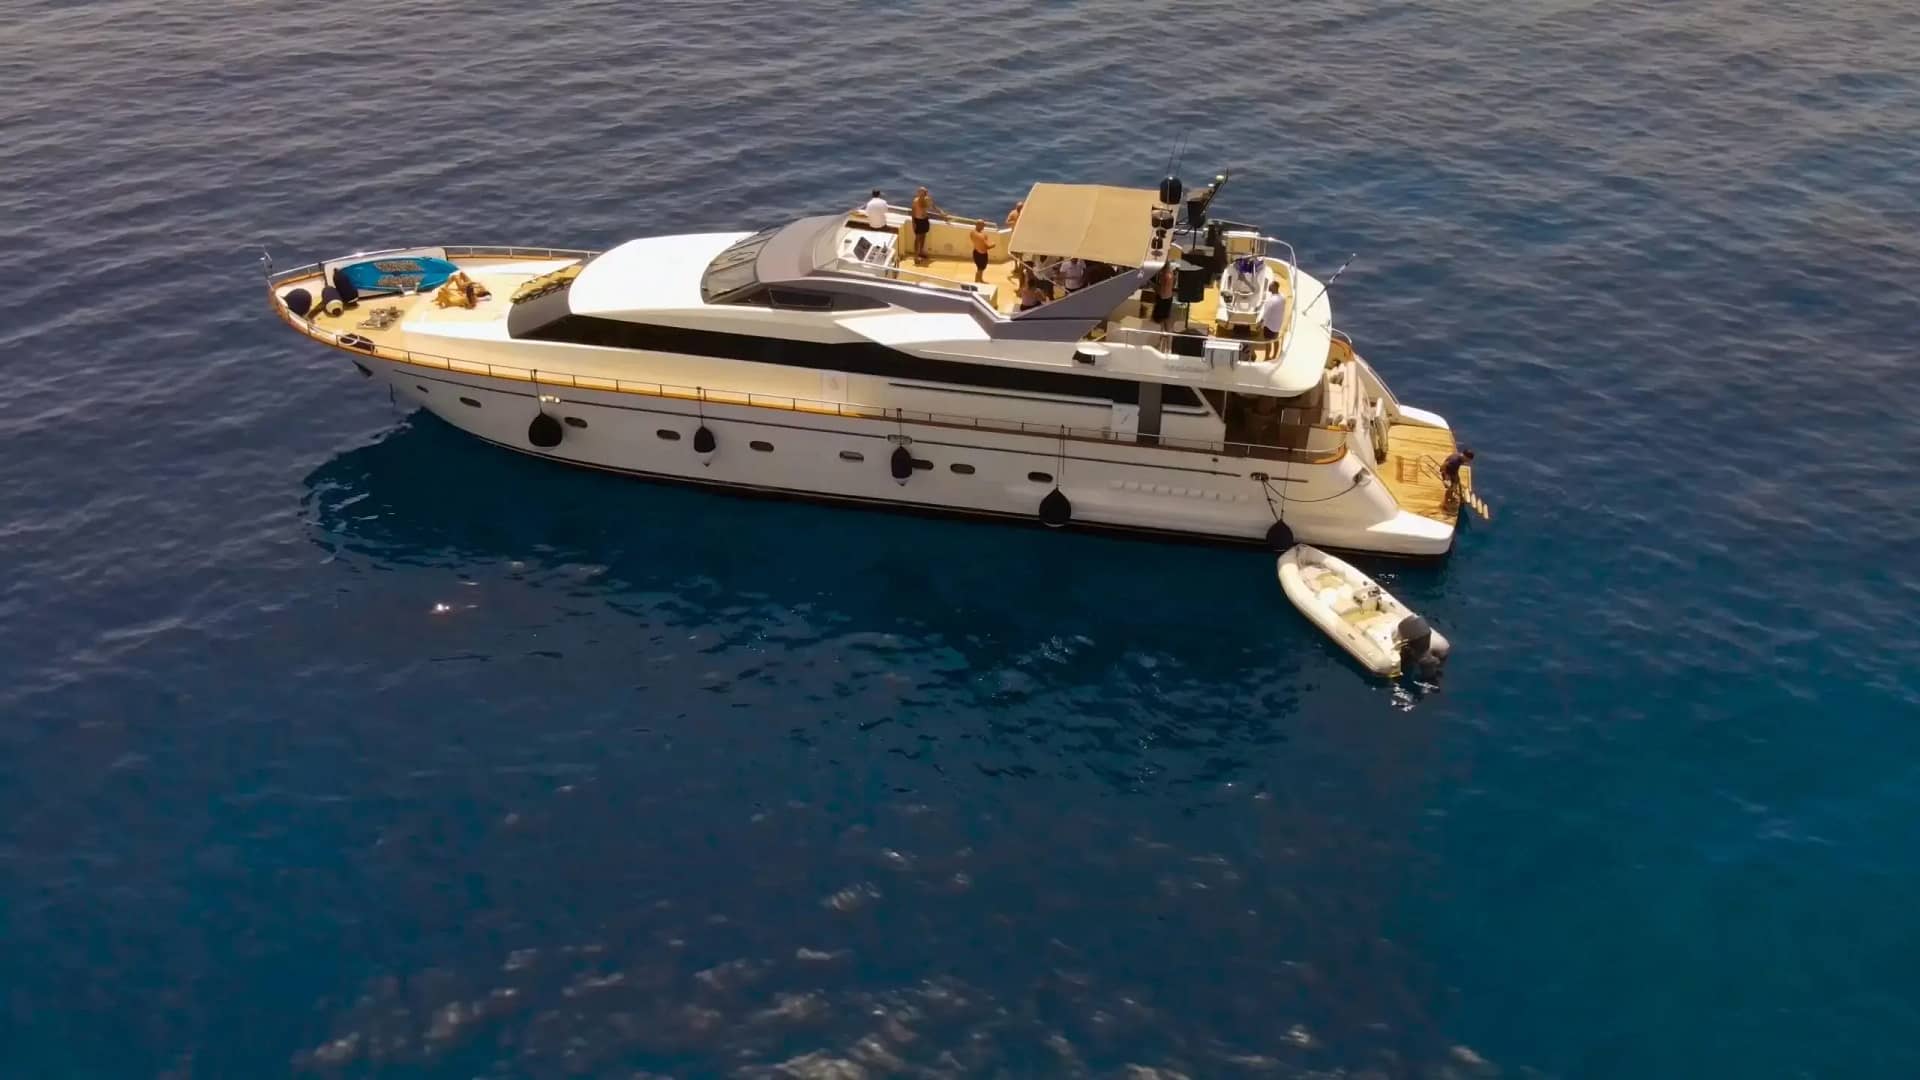 Yacht Rental Miami - Rent Luxury Yacht Party | Miami Club